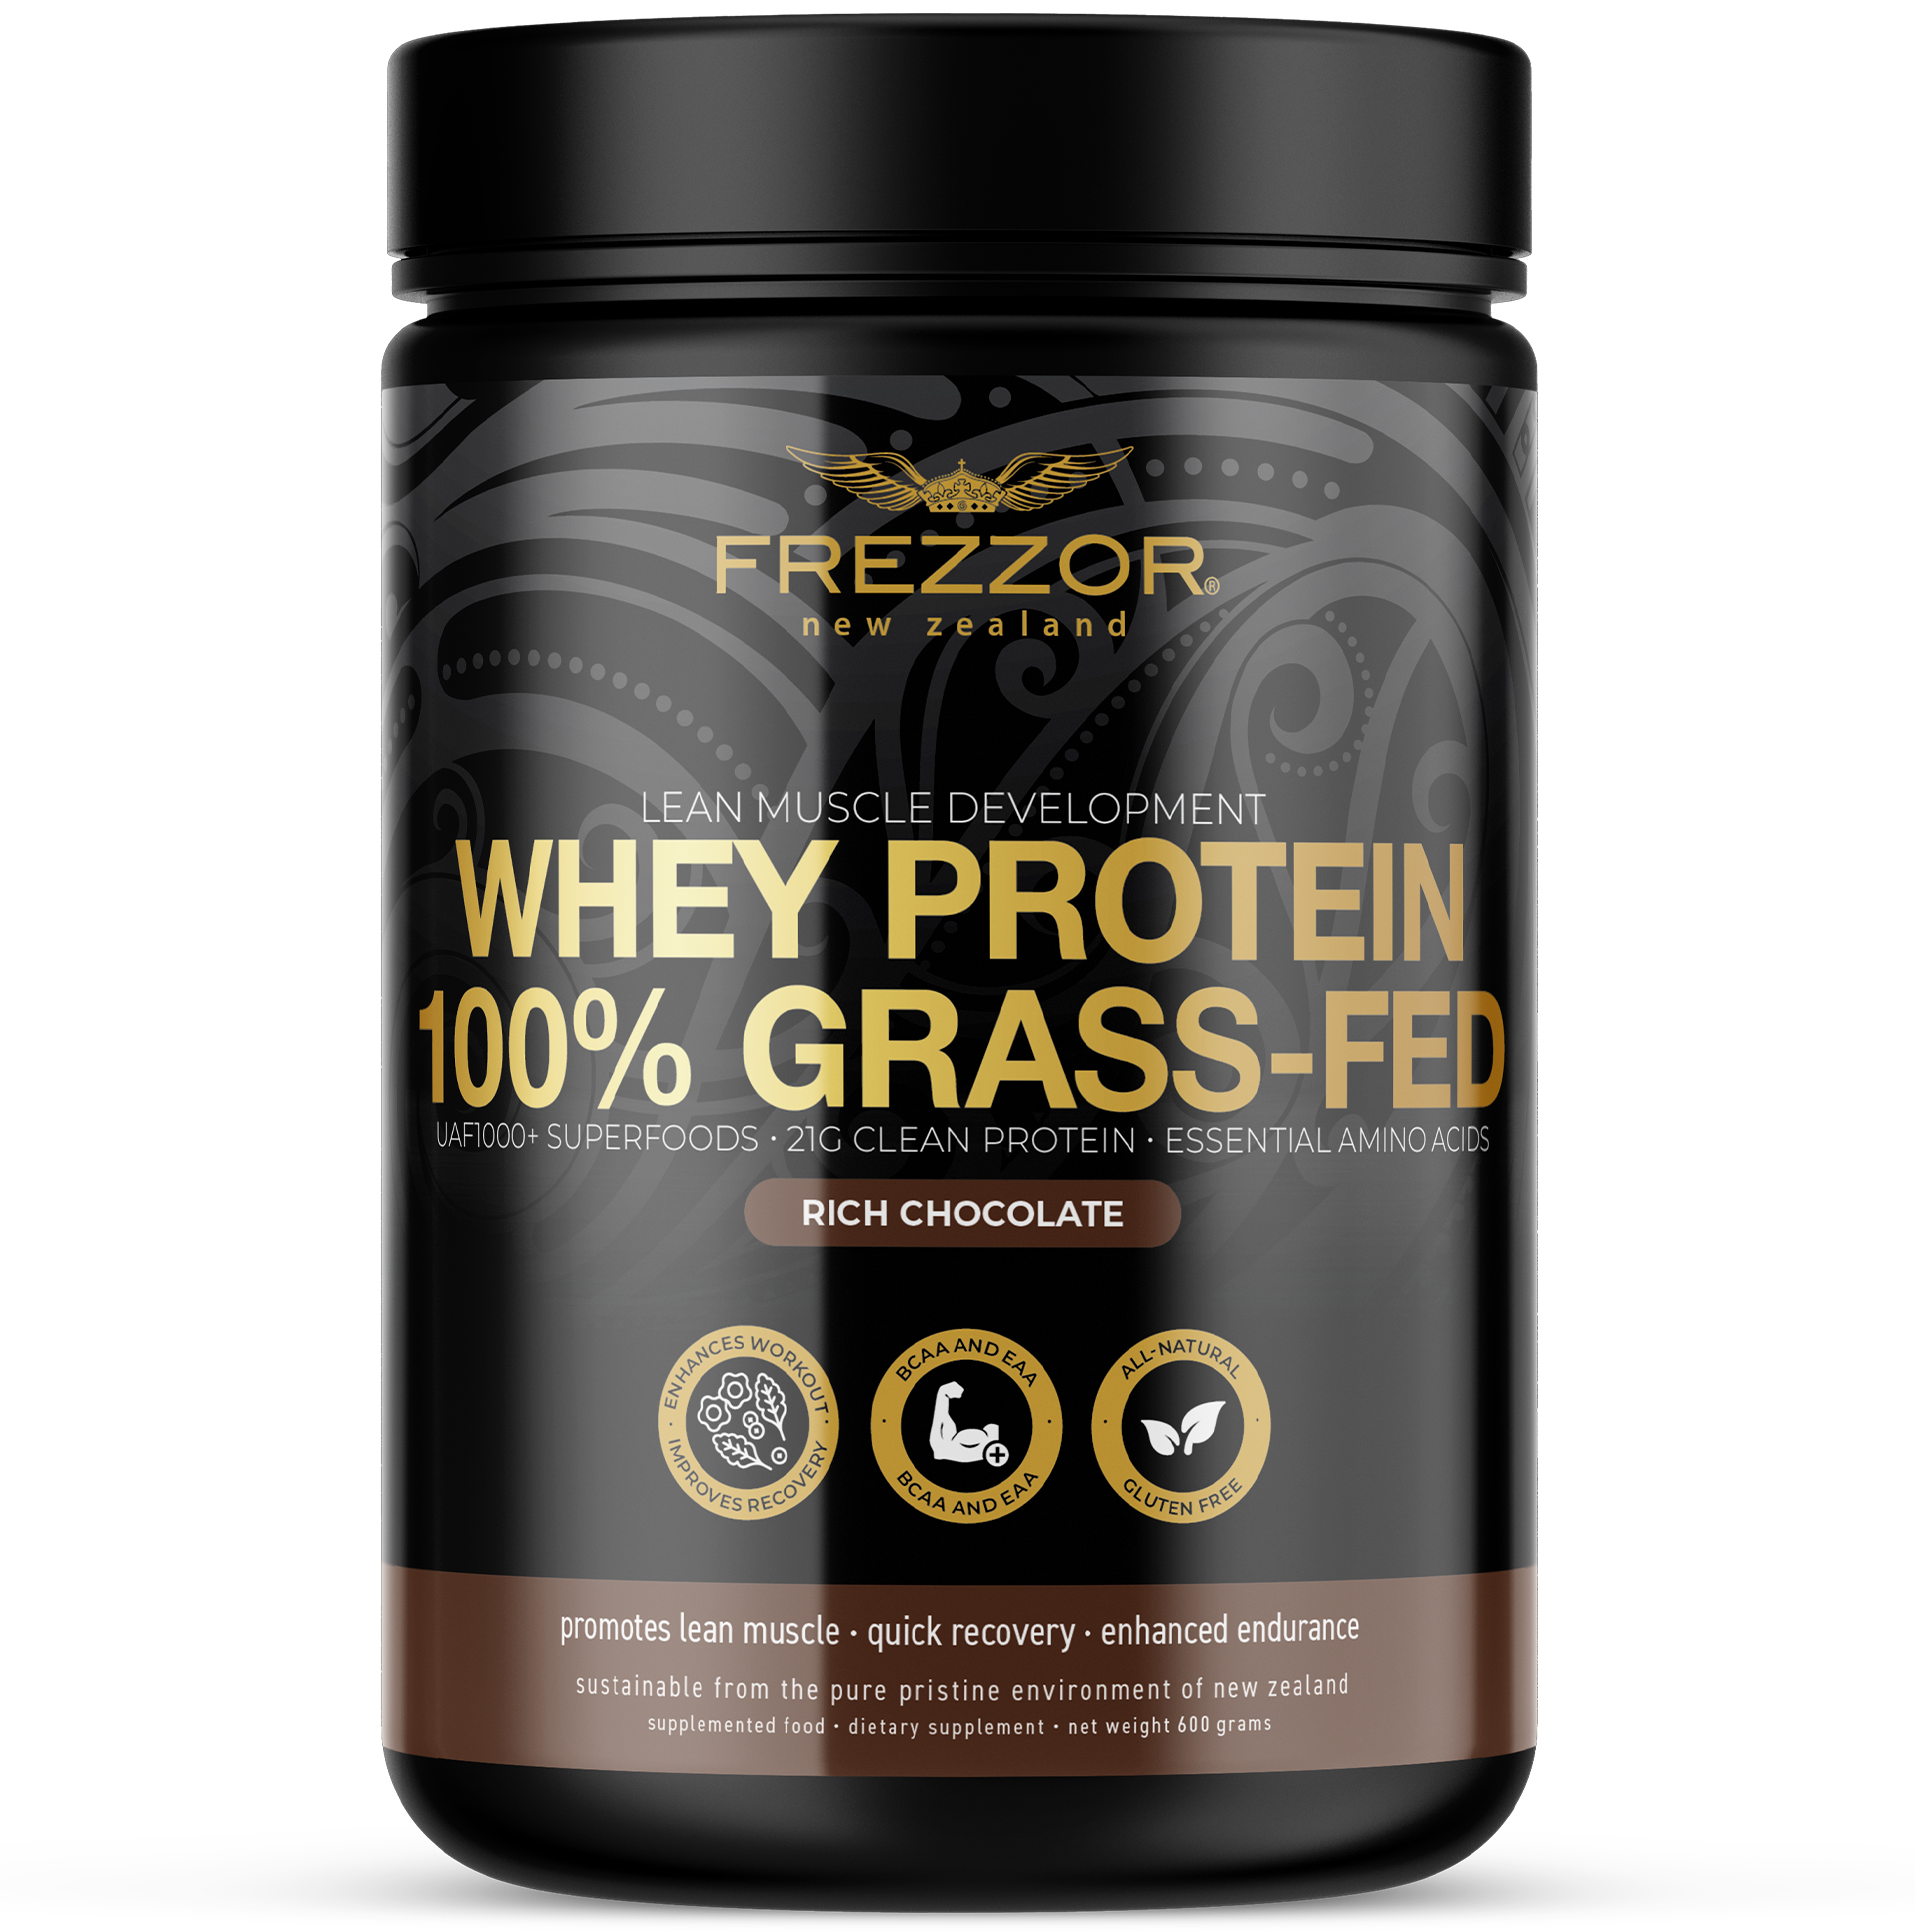 Whey Protein Chocolate Powder  FREZZOR Pure Grass-fed chocolate whey protein powder for weight loss 